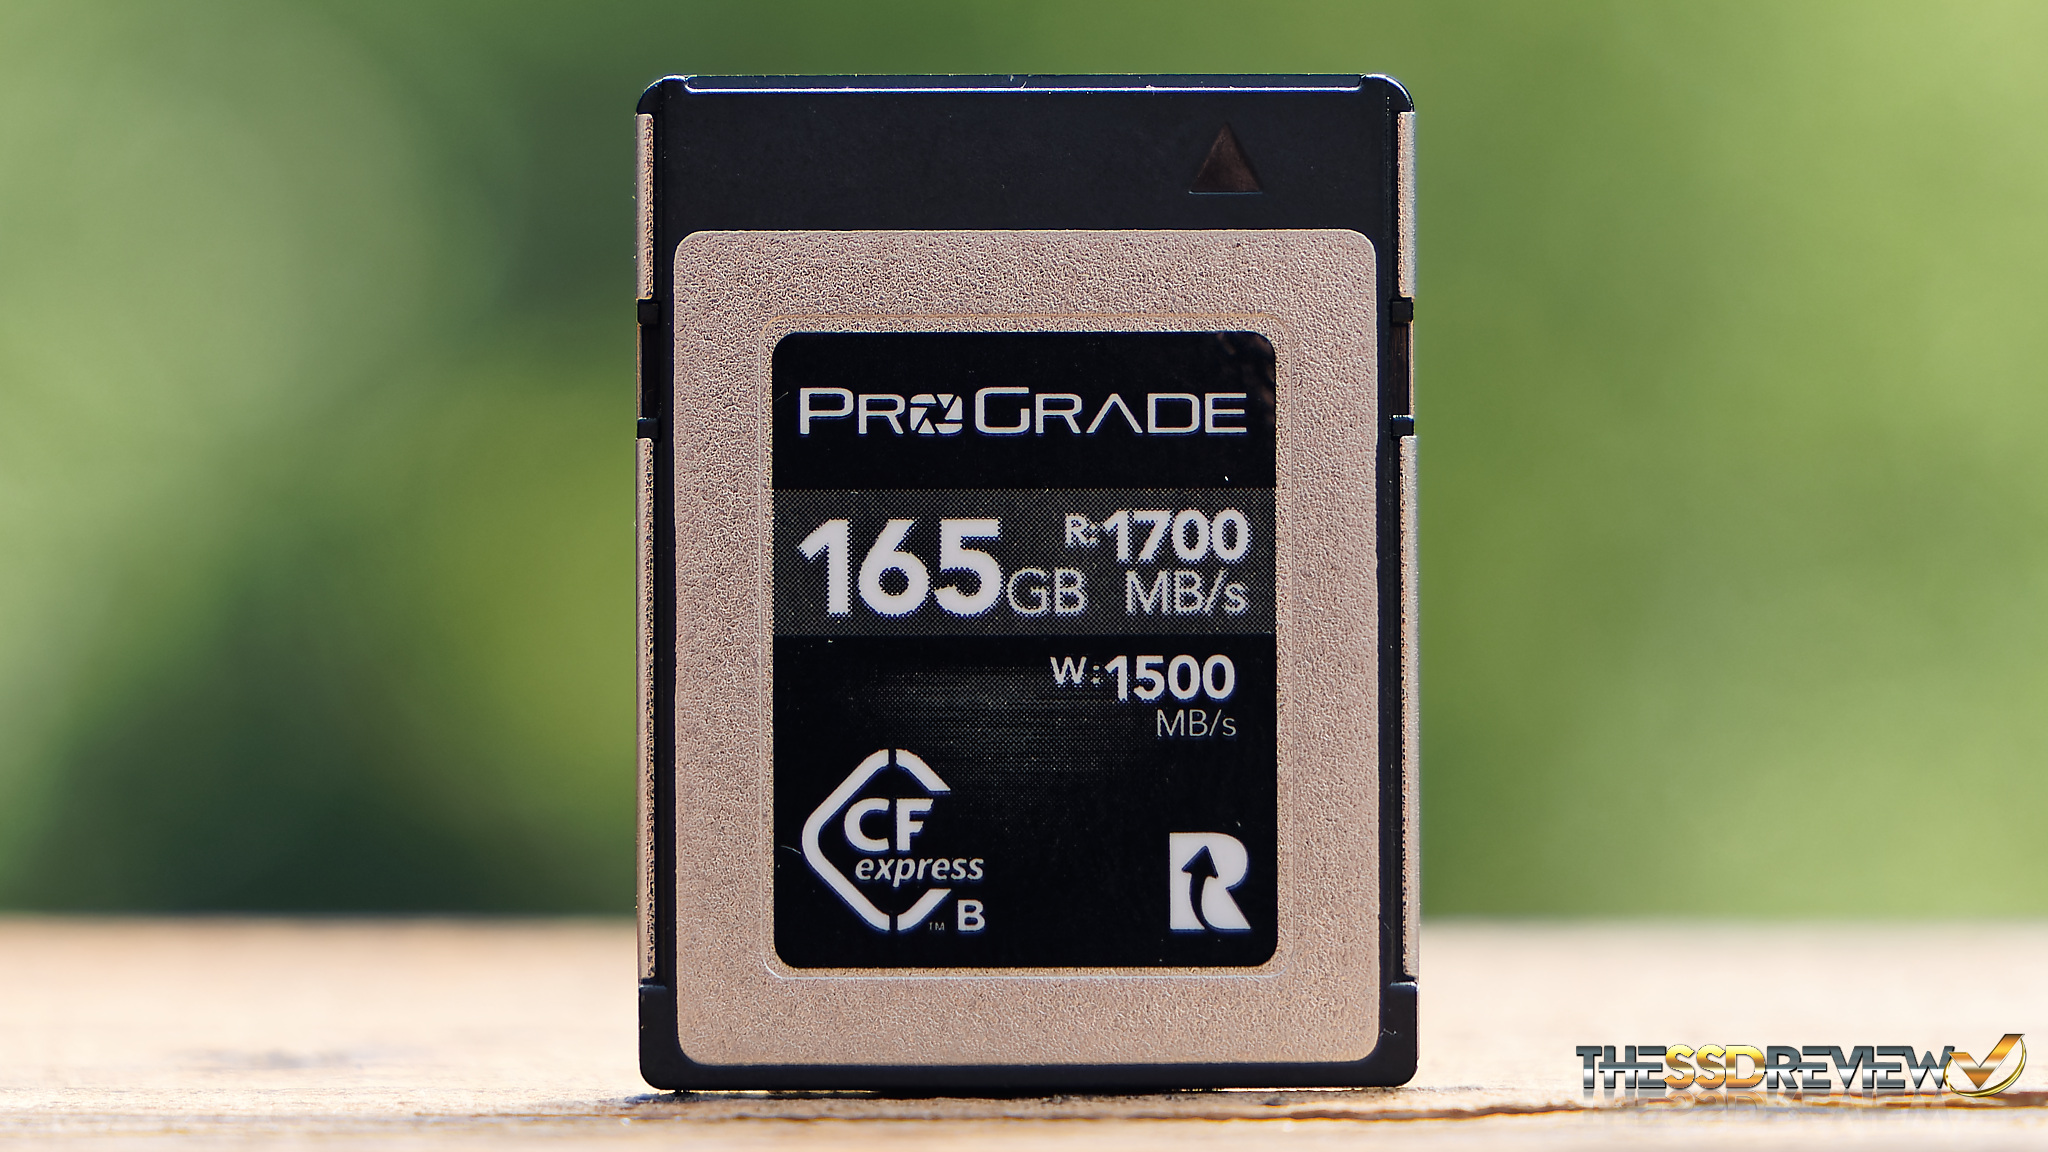 PROGRADE CFxpressカード　COBALT 325GB+純正バッテリ